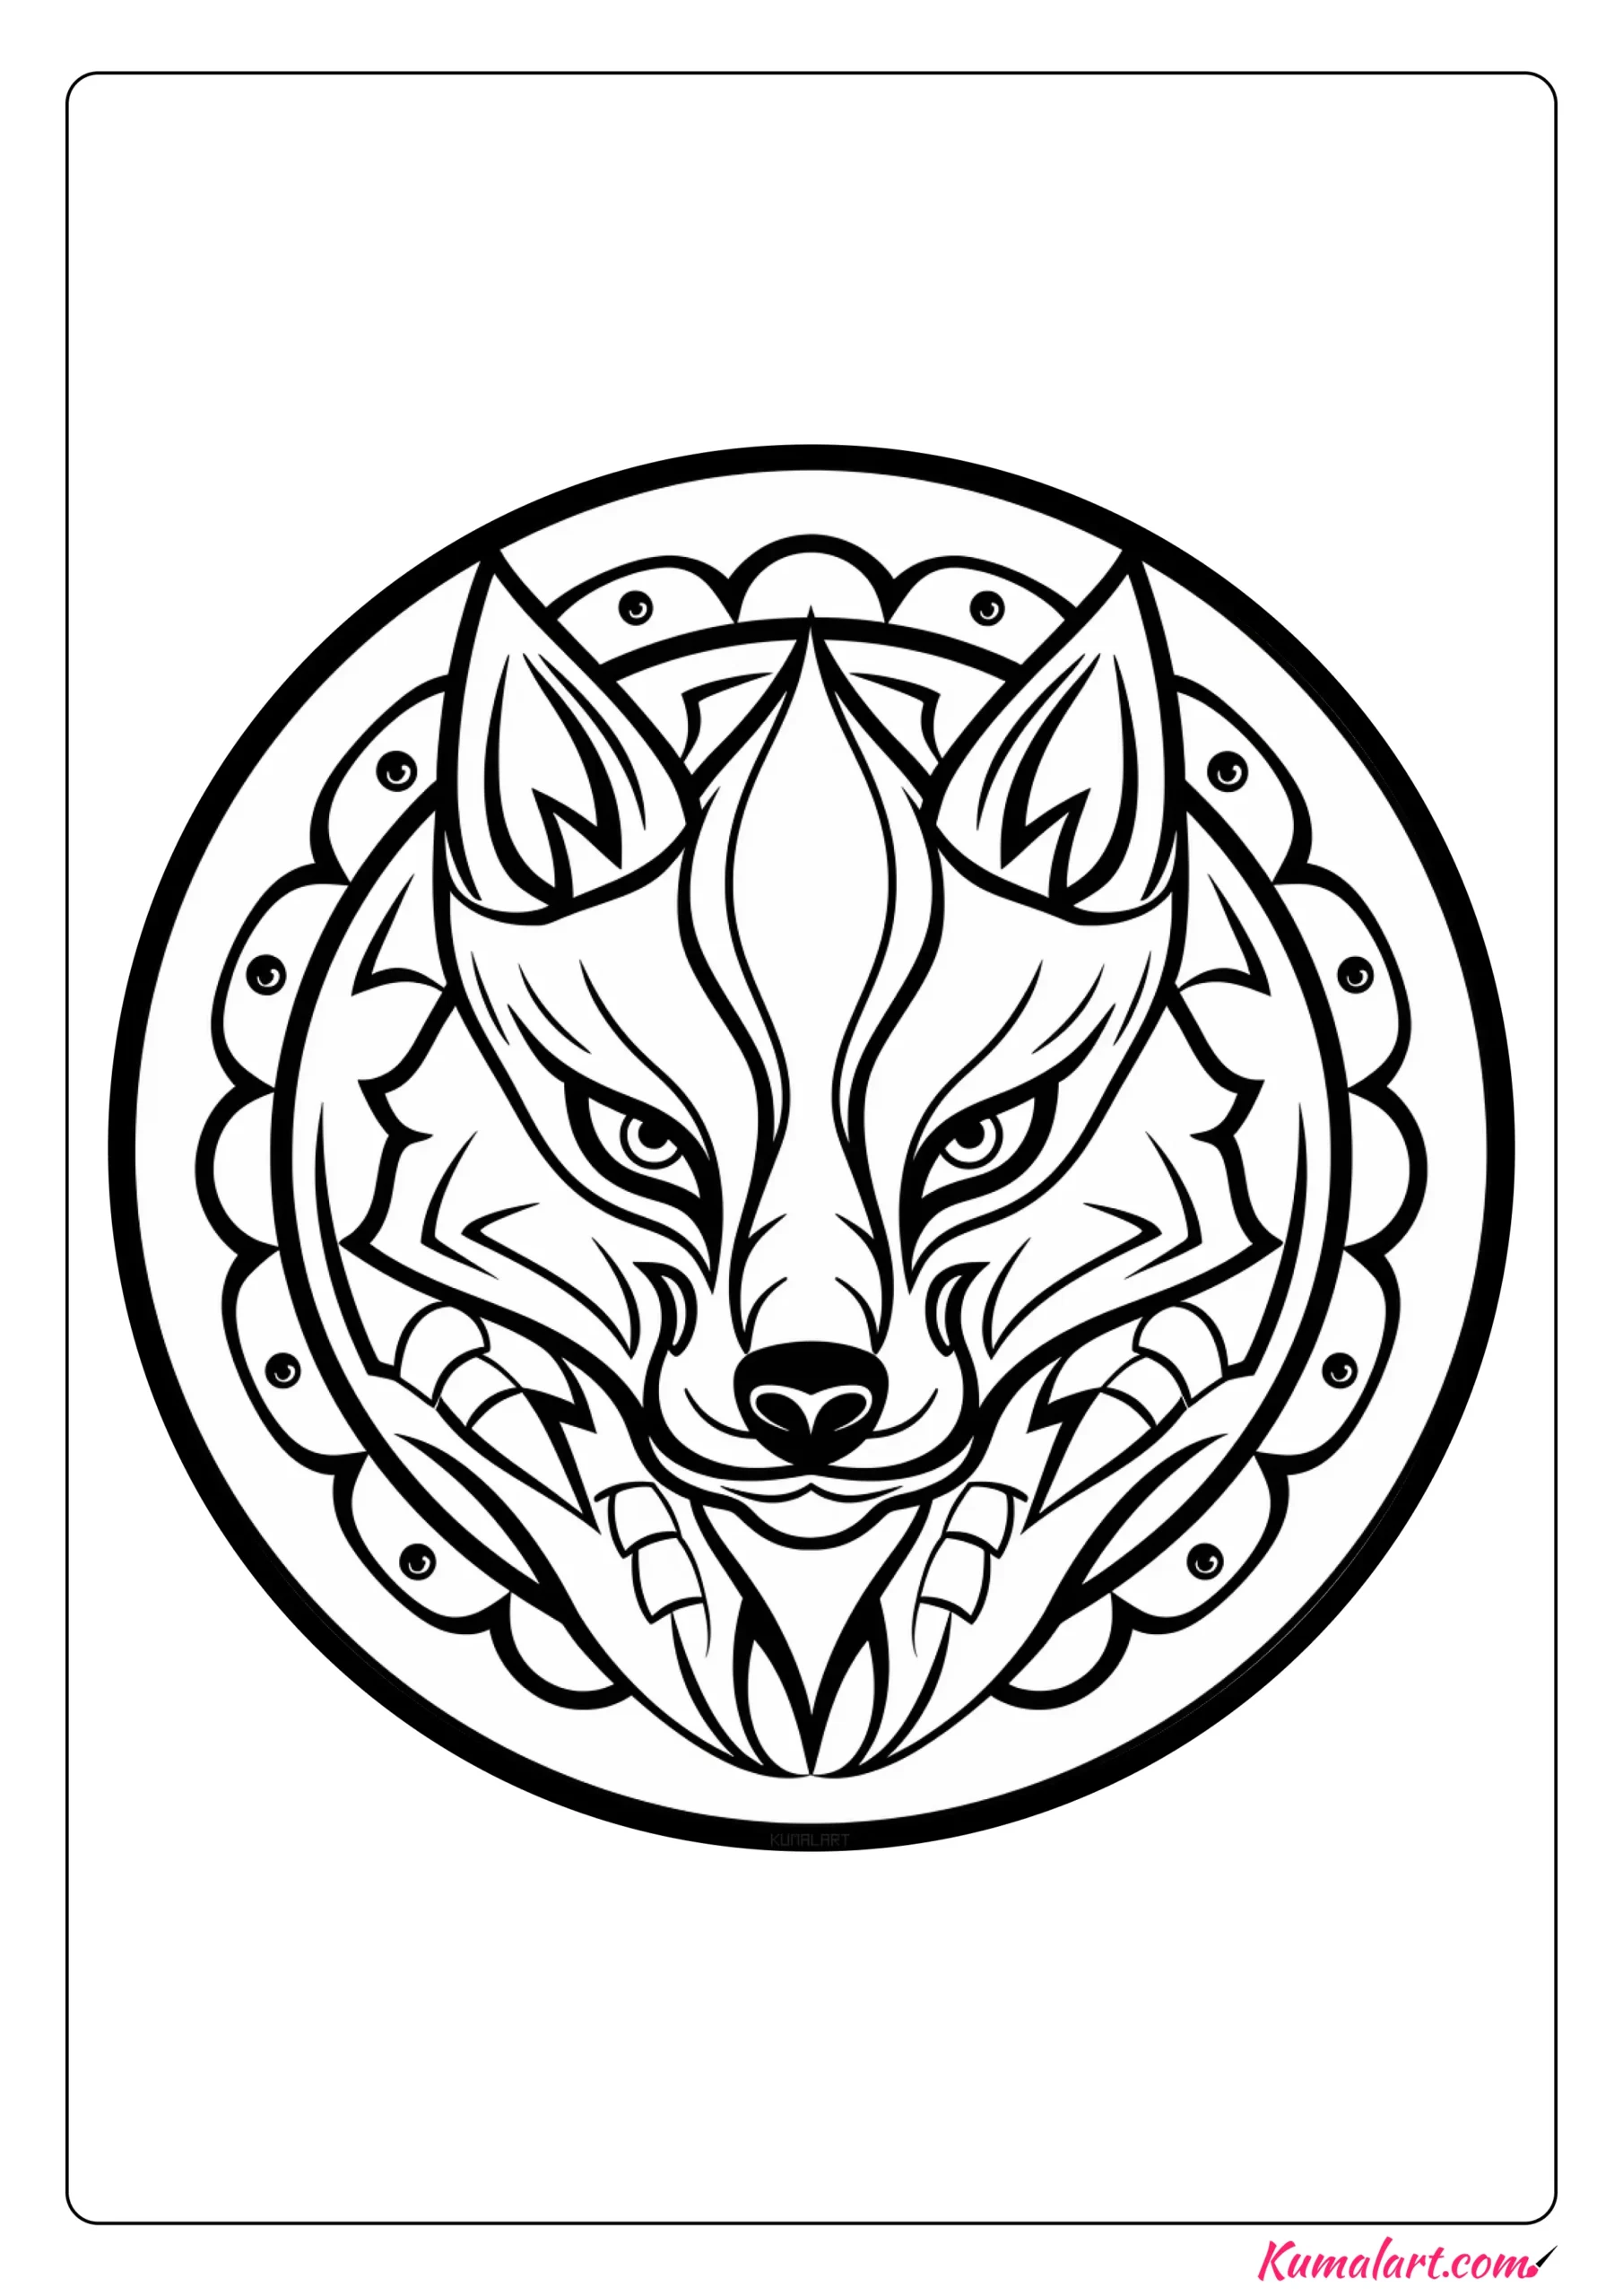 Max the Fox Mandala Coloring Page